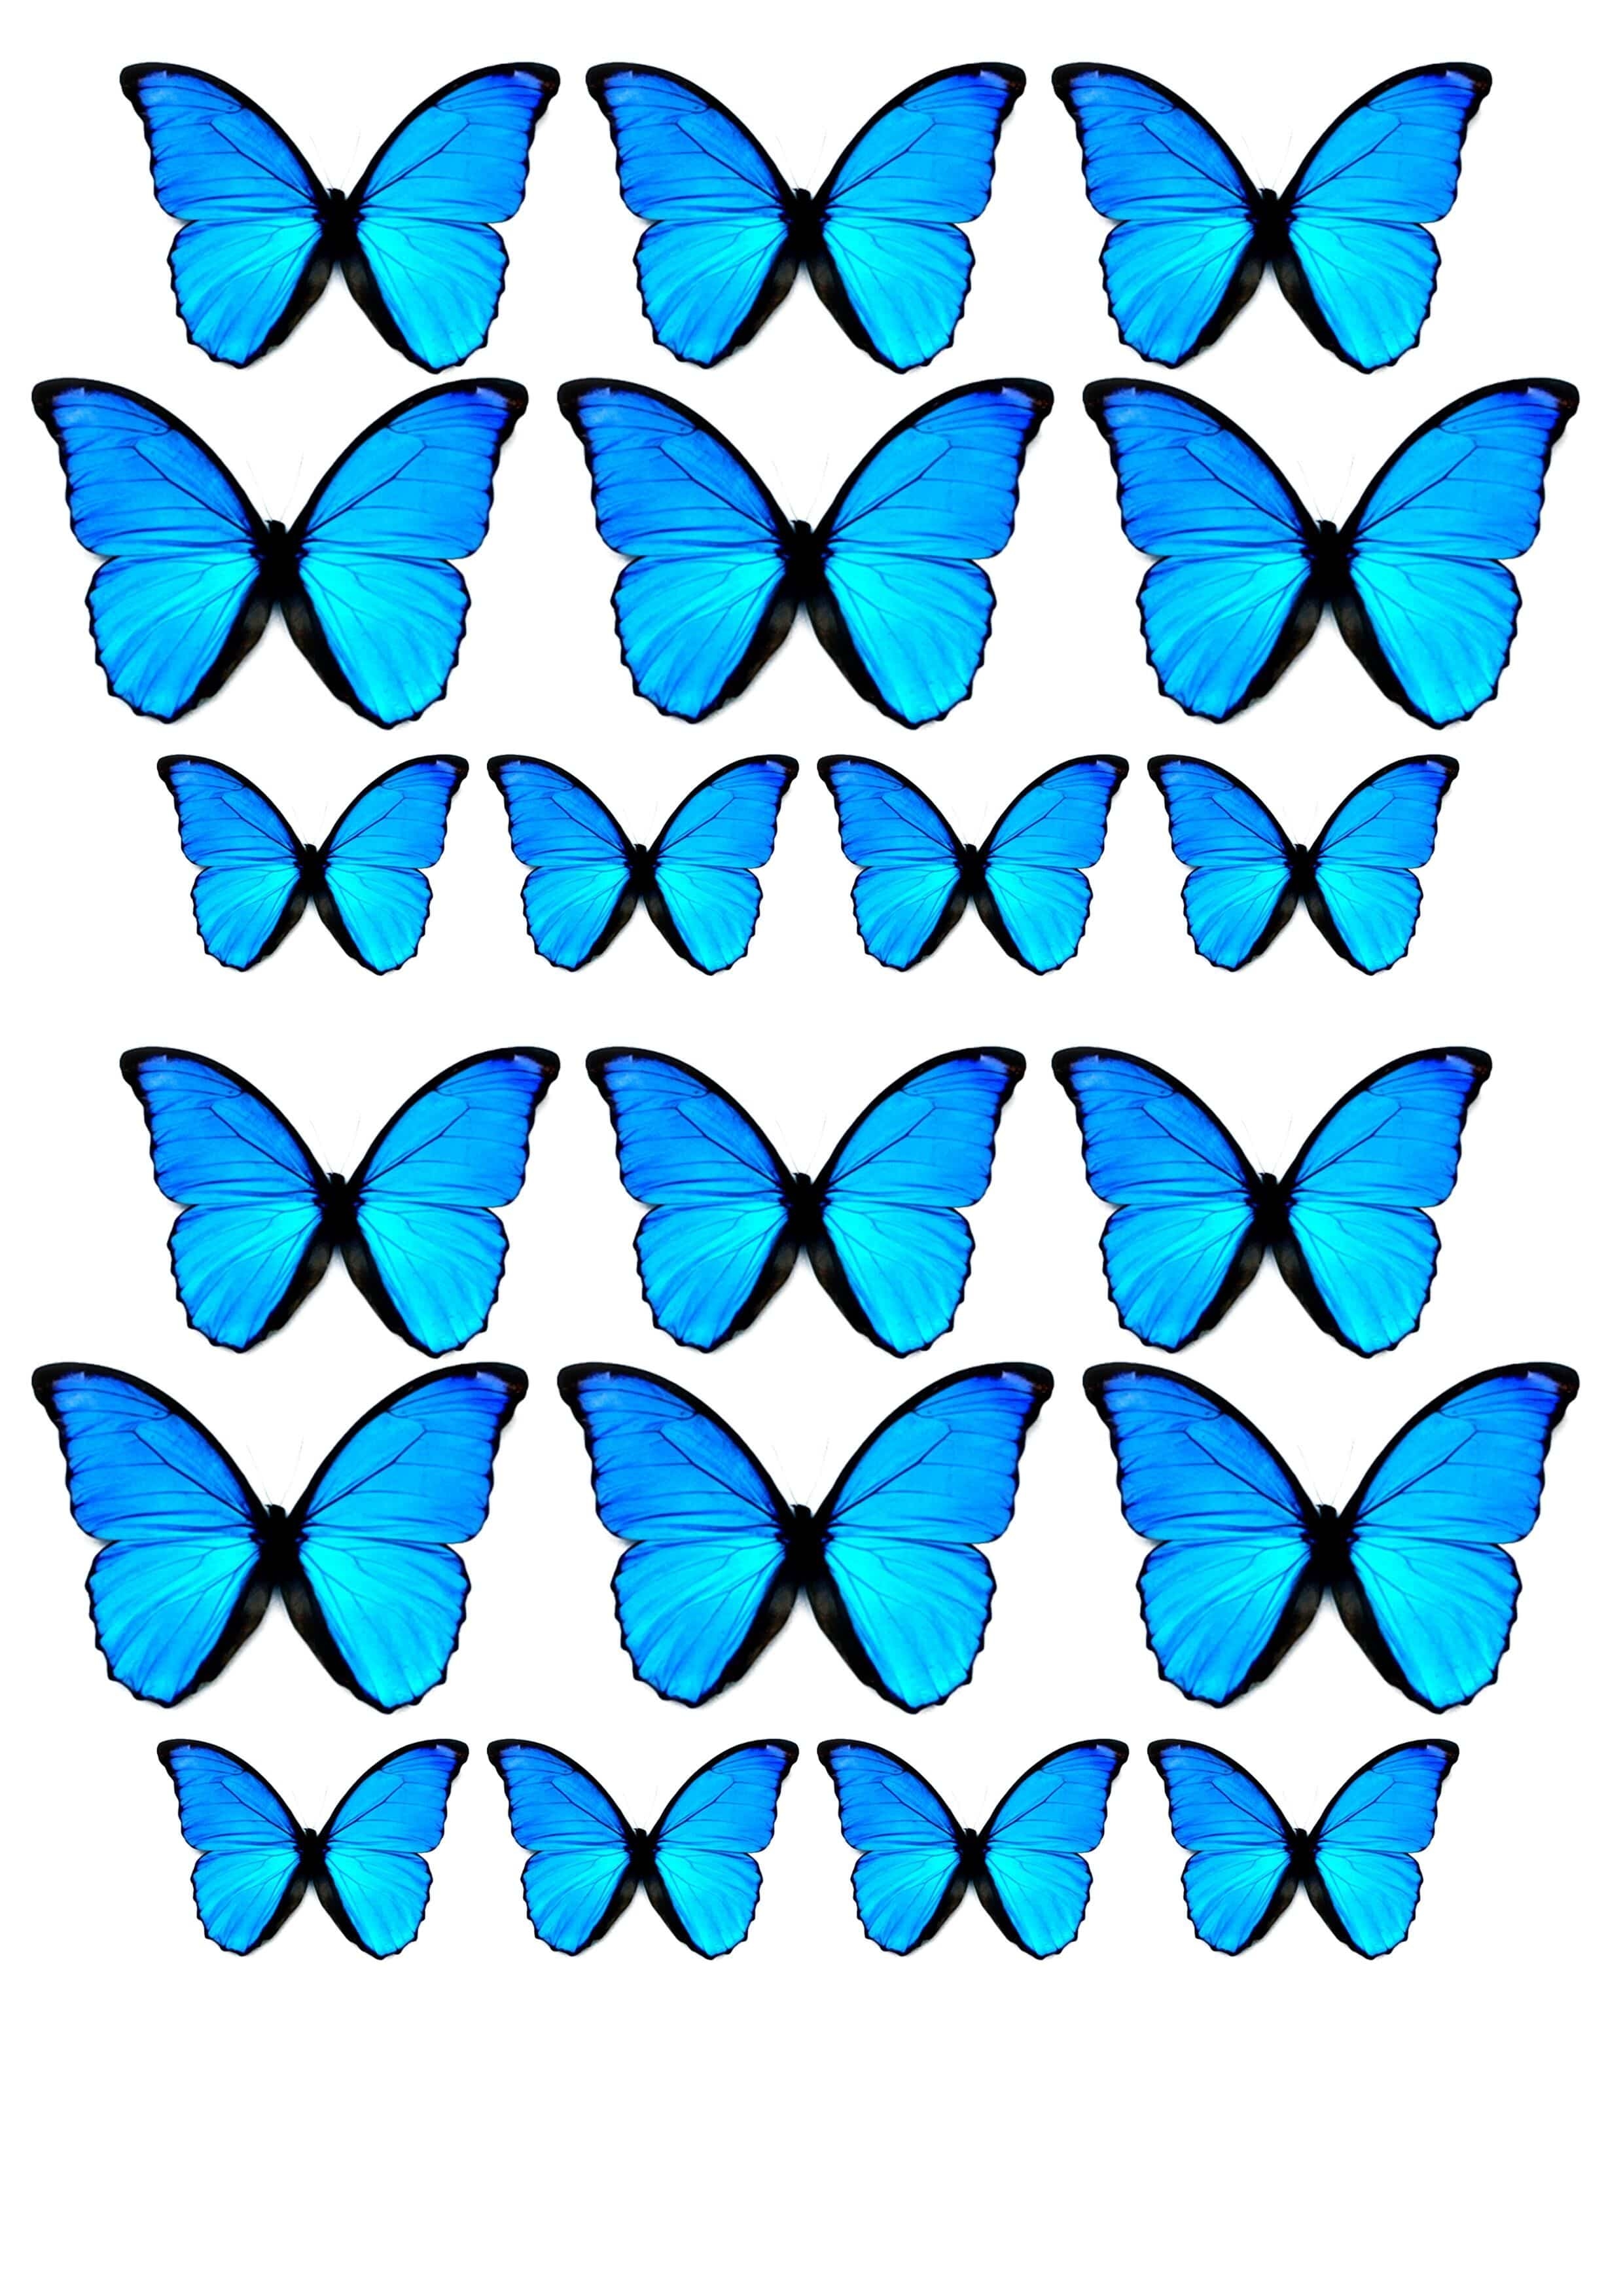 Шаблон бабочки: векторные изображения и иллюстрации, которые можно скачать бесплатно | Freepik